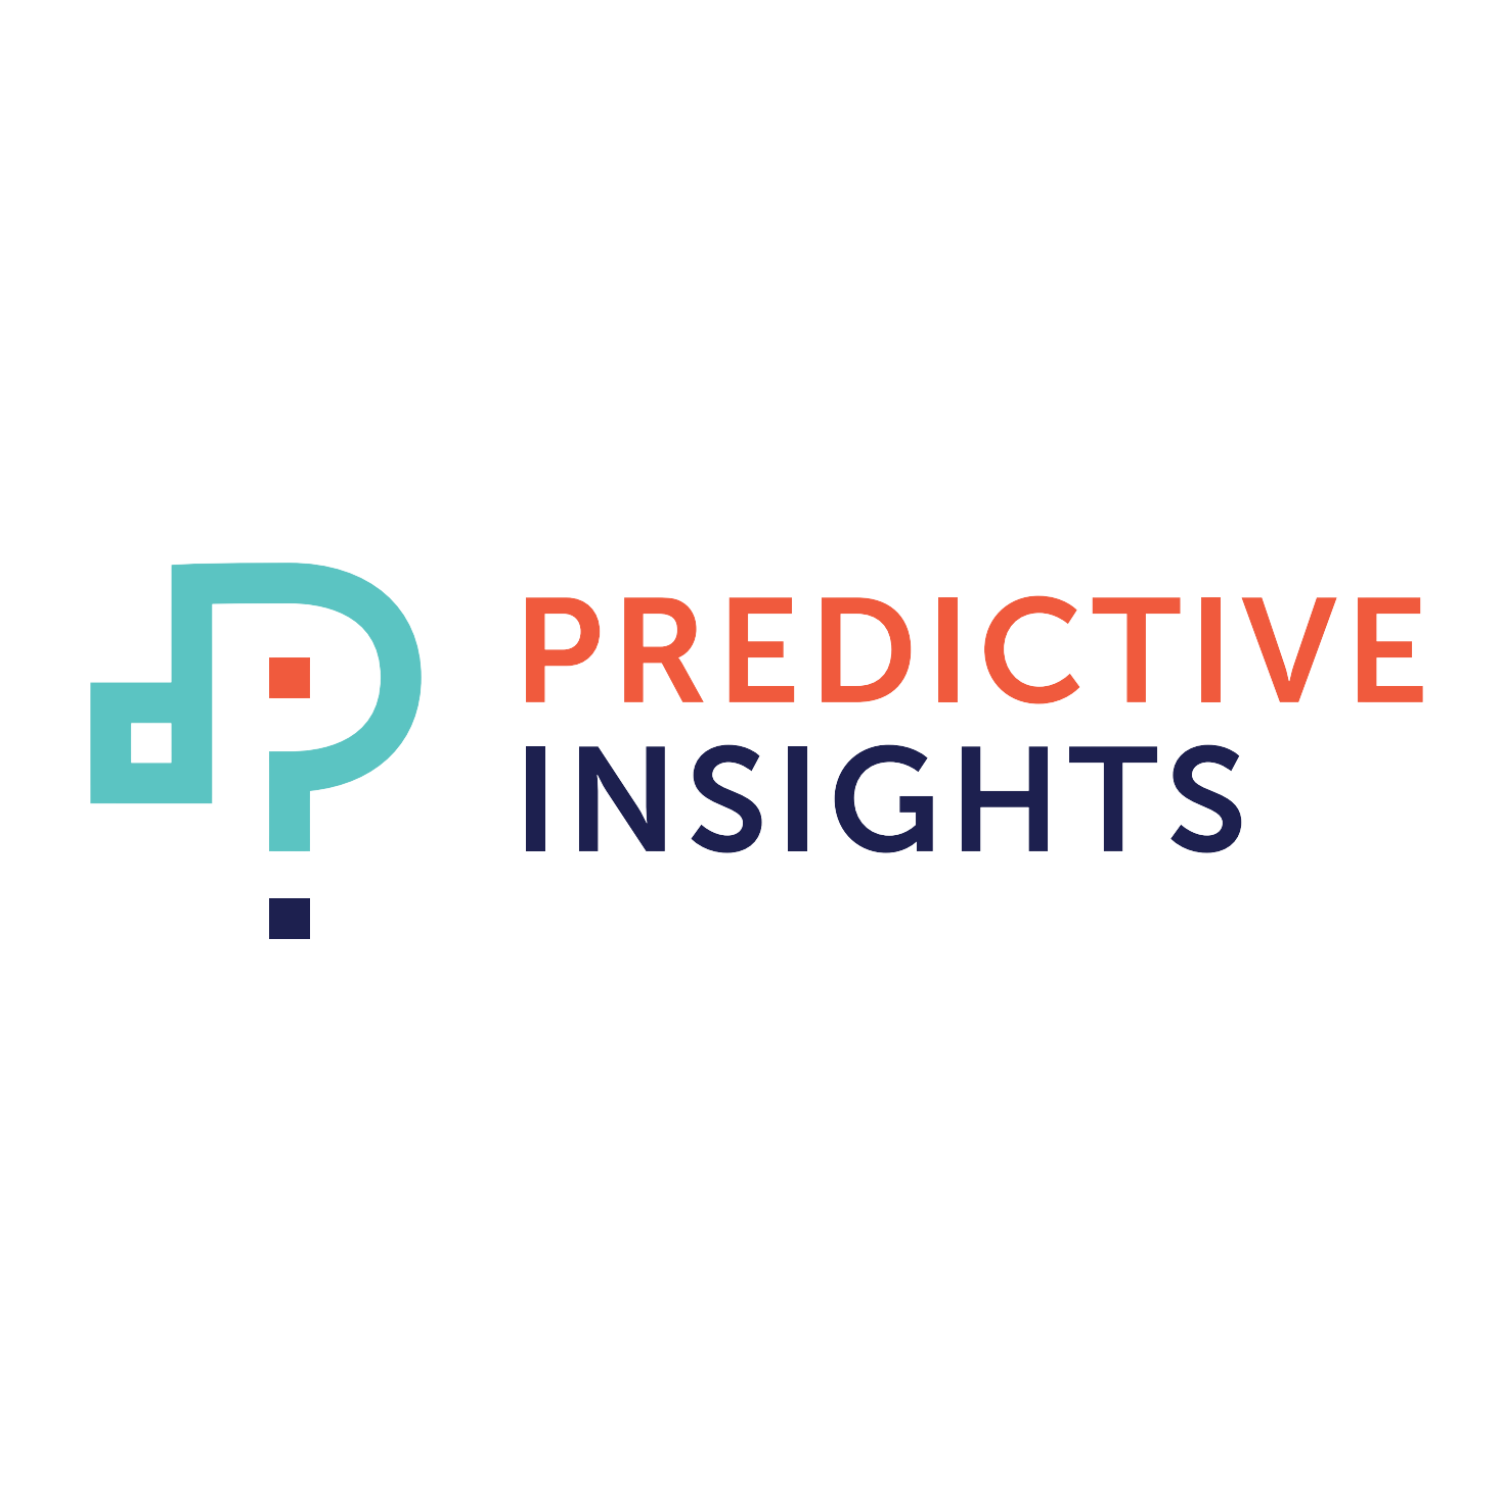 Predictive Insights